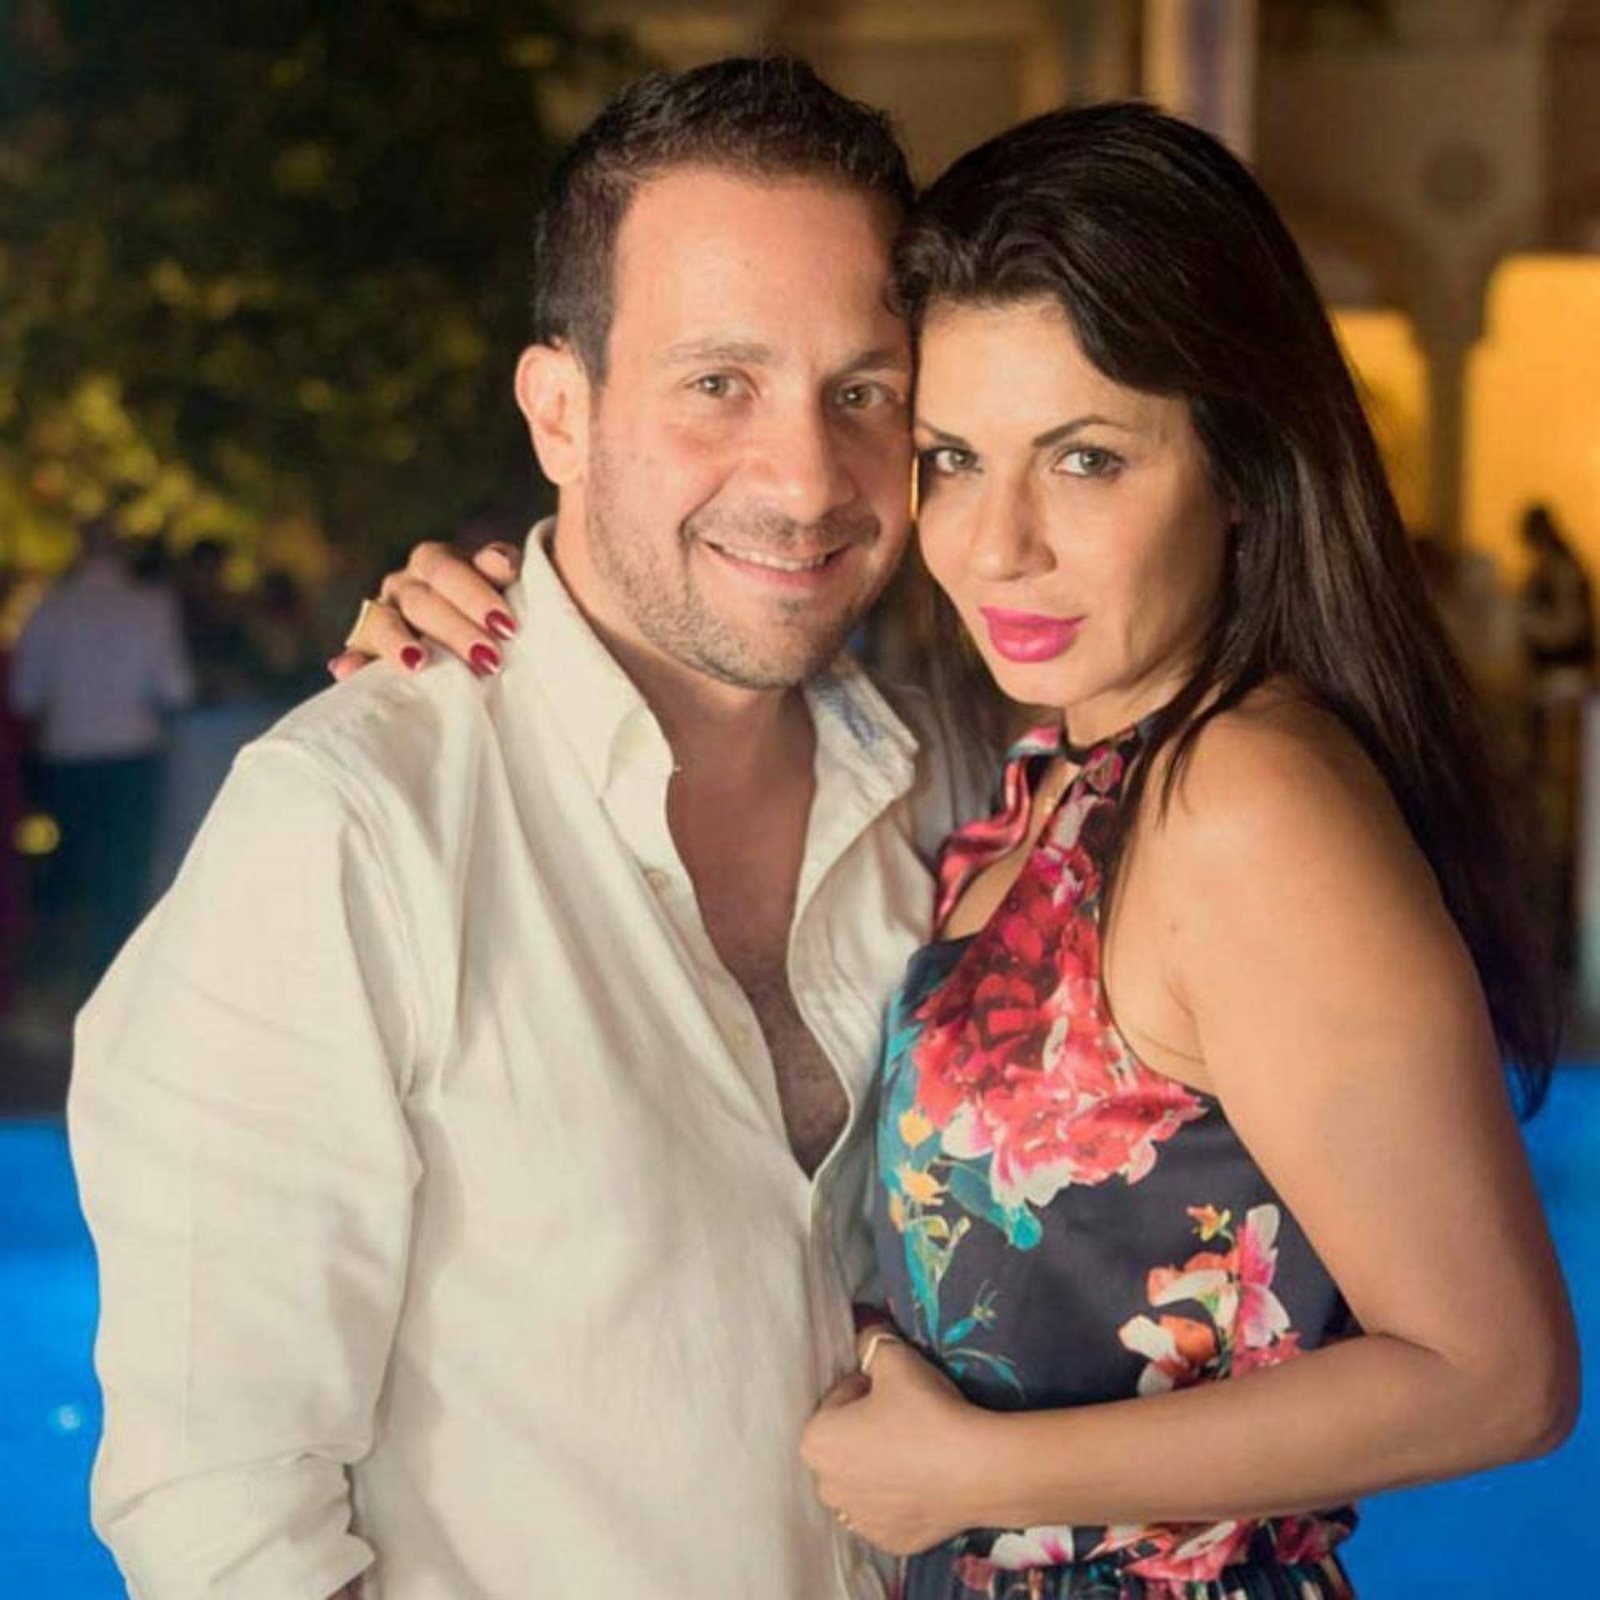 زوج الفنانة نجلاء بدر يثير الجدل بتصريحات عن جسد زوجته خلال بث مباشر